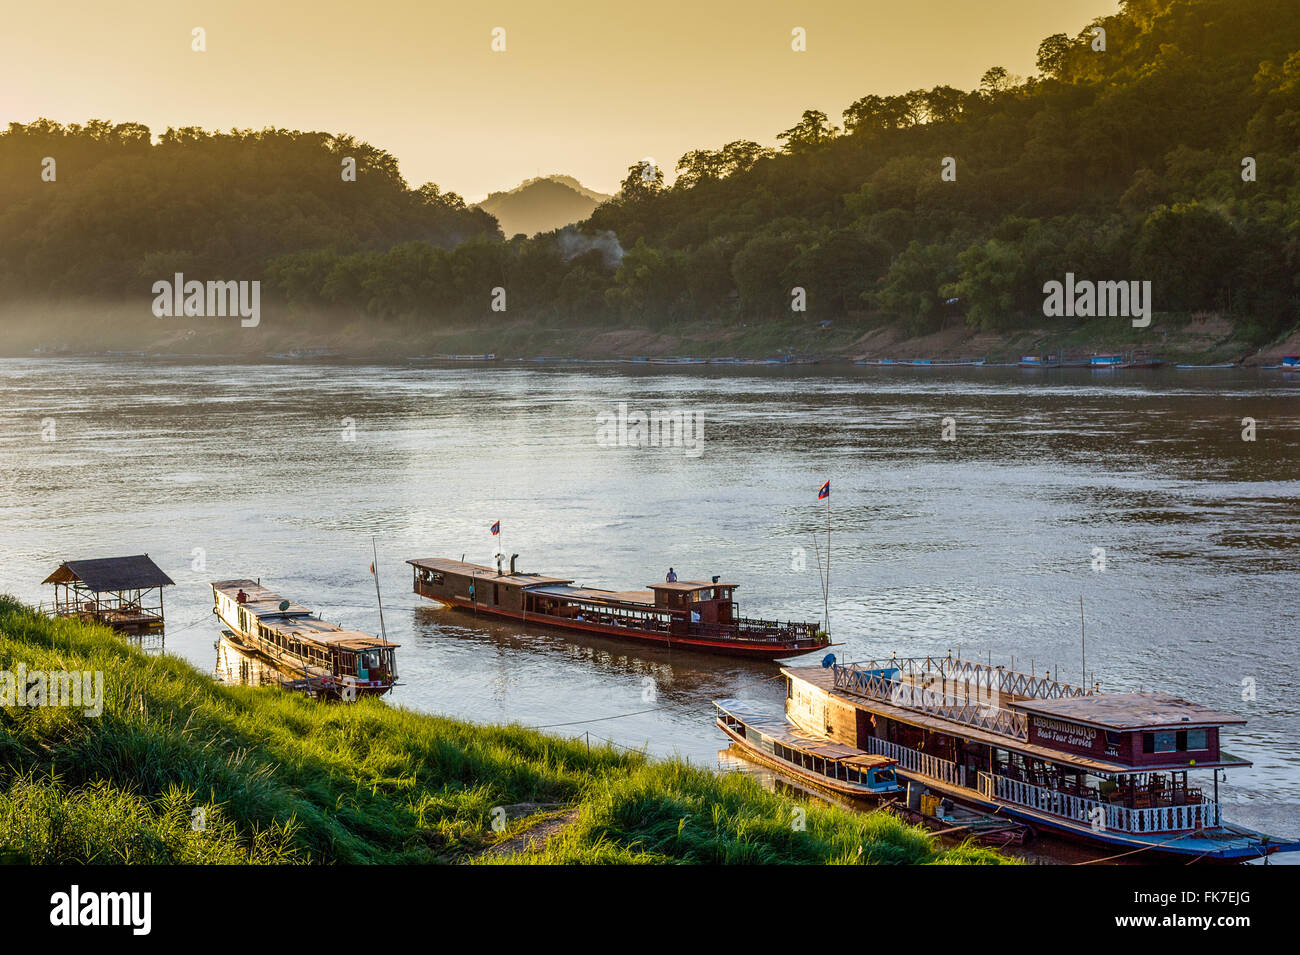 L'Asie. L'Asie du Sud-Est. Le Laos. Province de Luang Prabang, ville de Luang Prabang, des bateaux sur le fleuve du Mékong. Banque D'Images